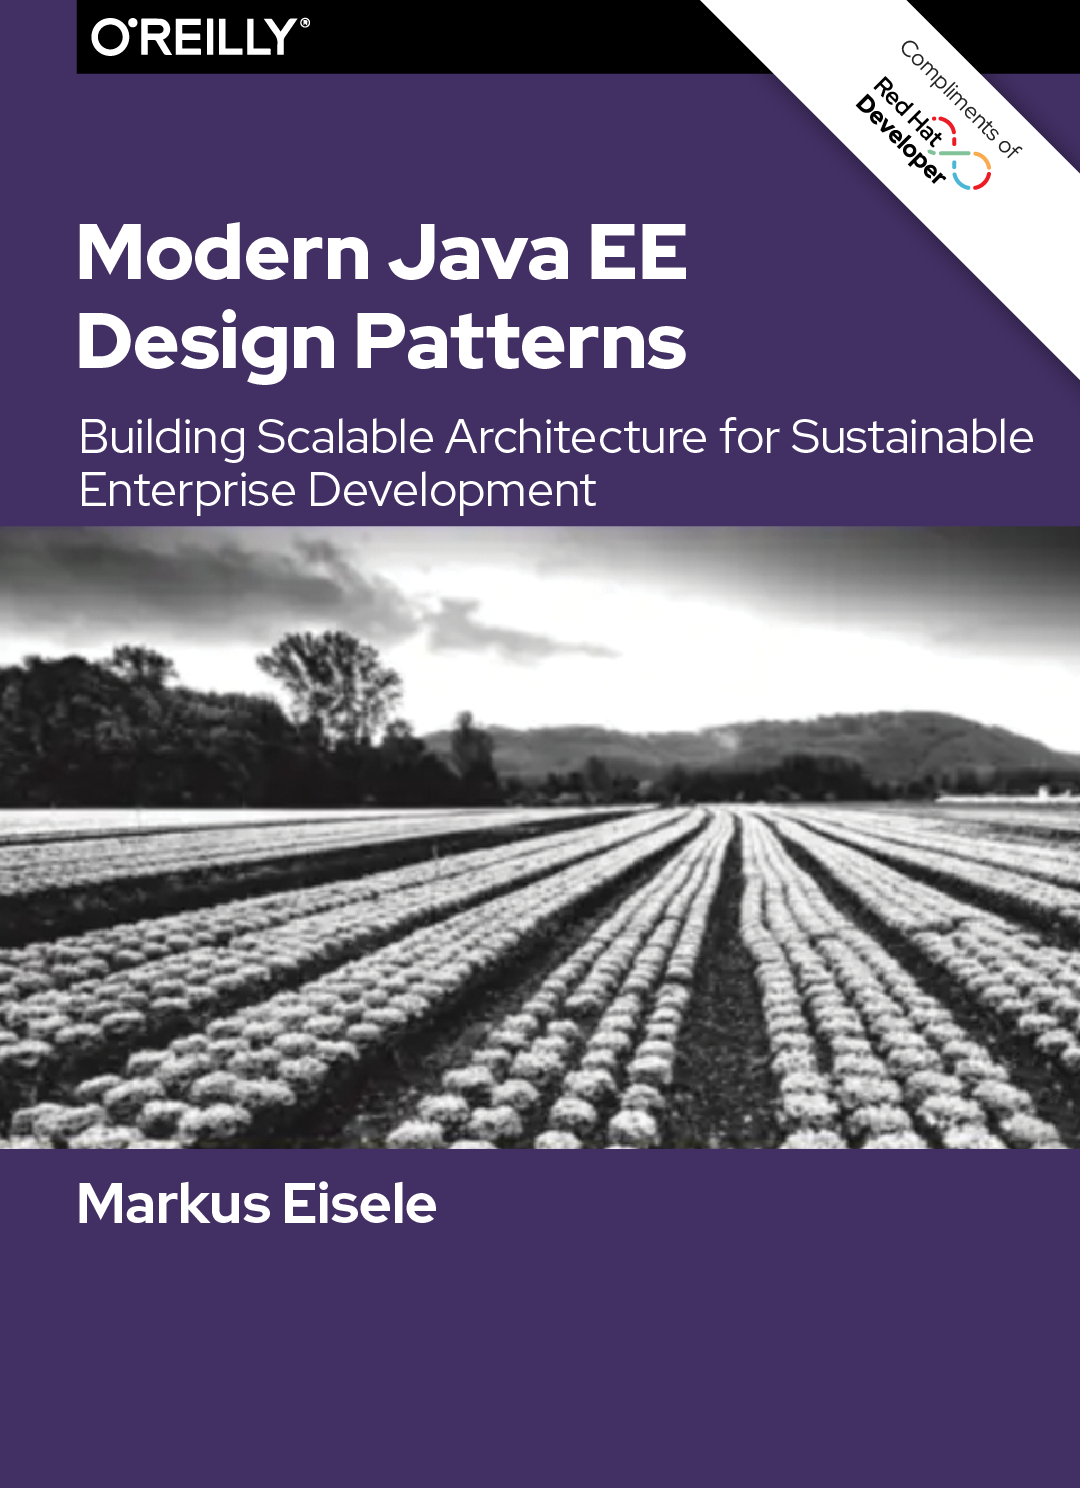 Modern Java EE Design Patterns_Cover image